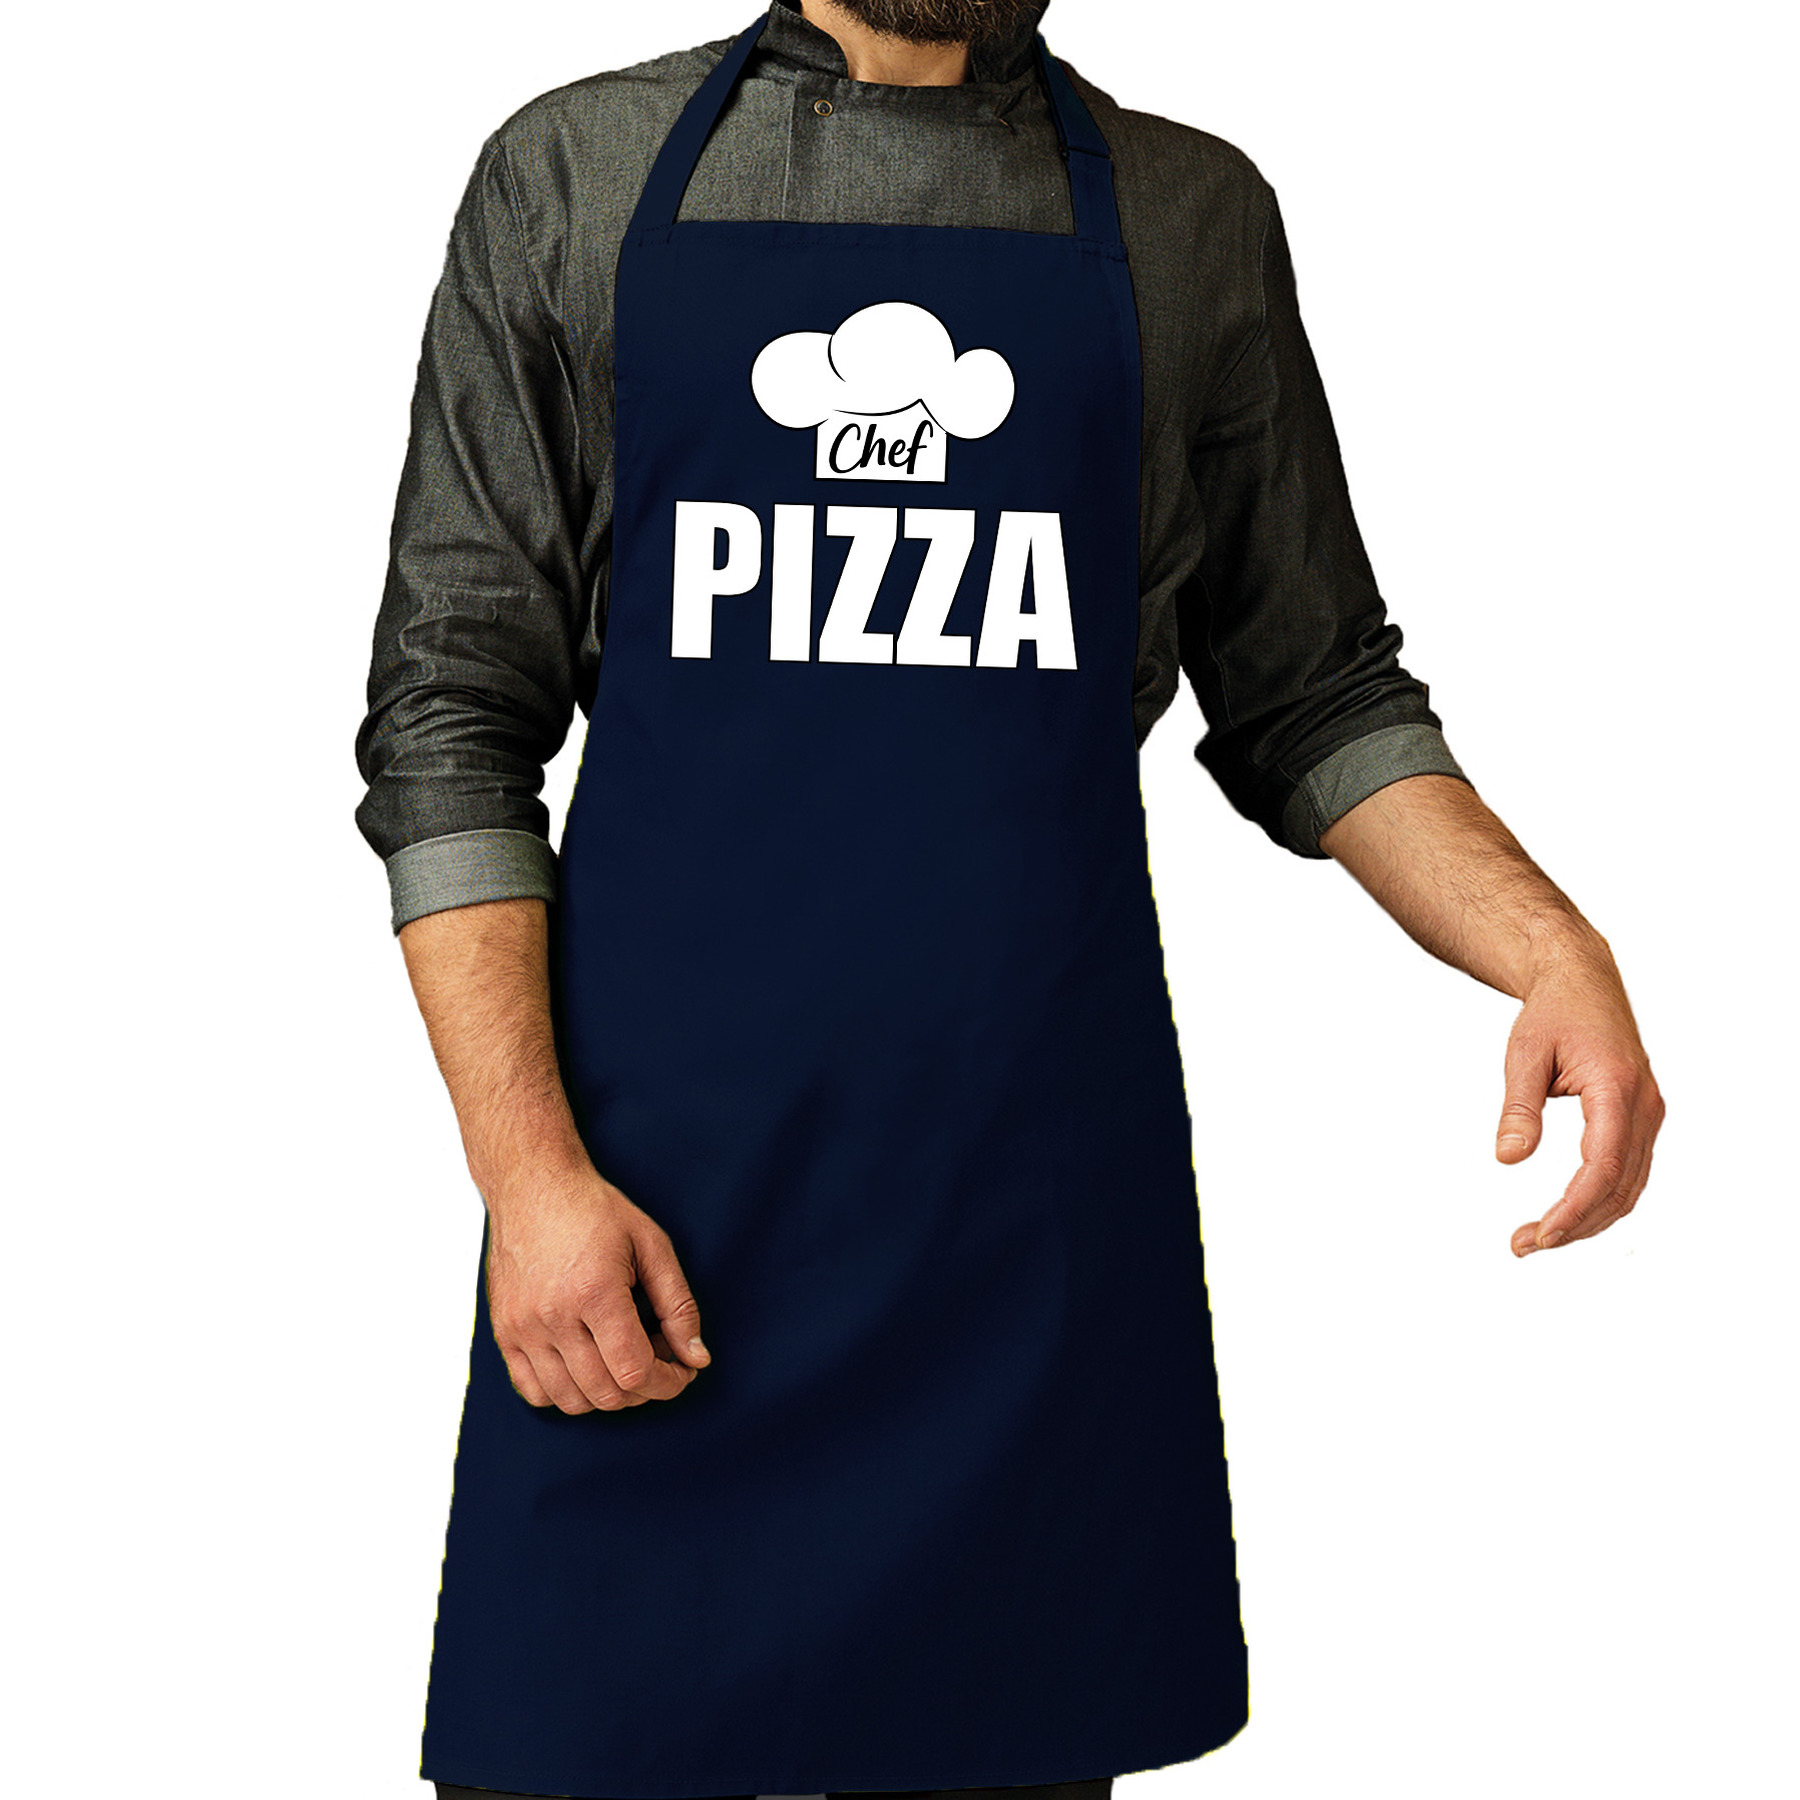 Chef pizza schort-keukenschort navy heren